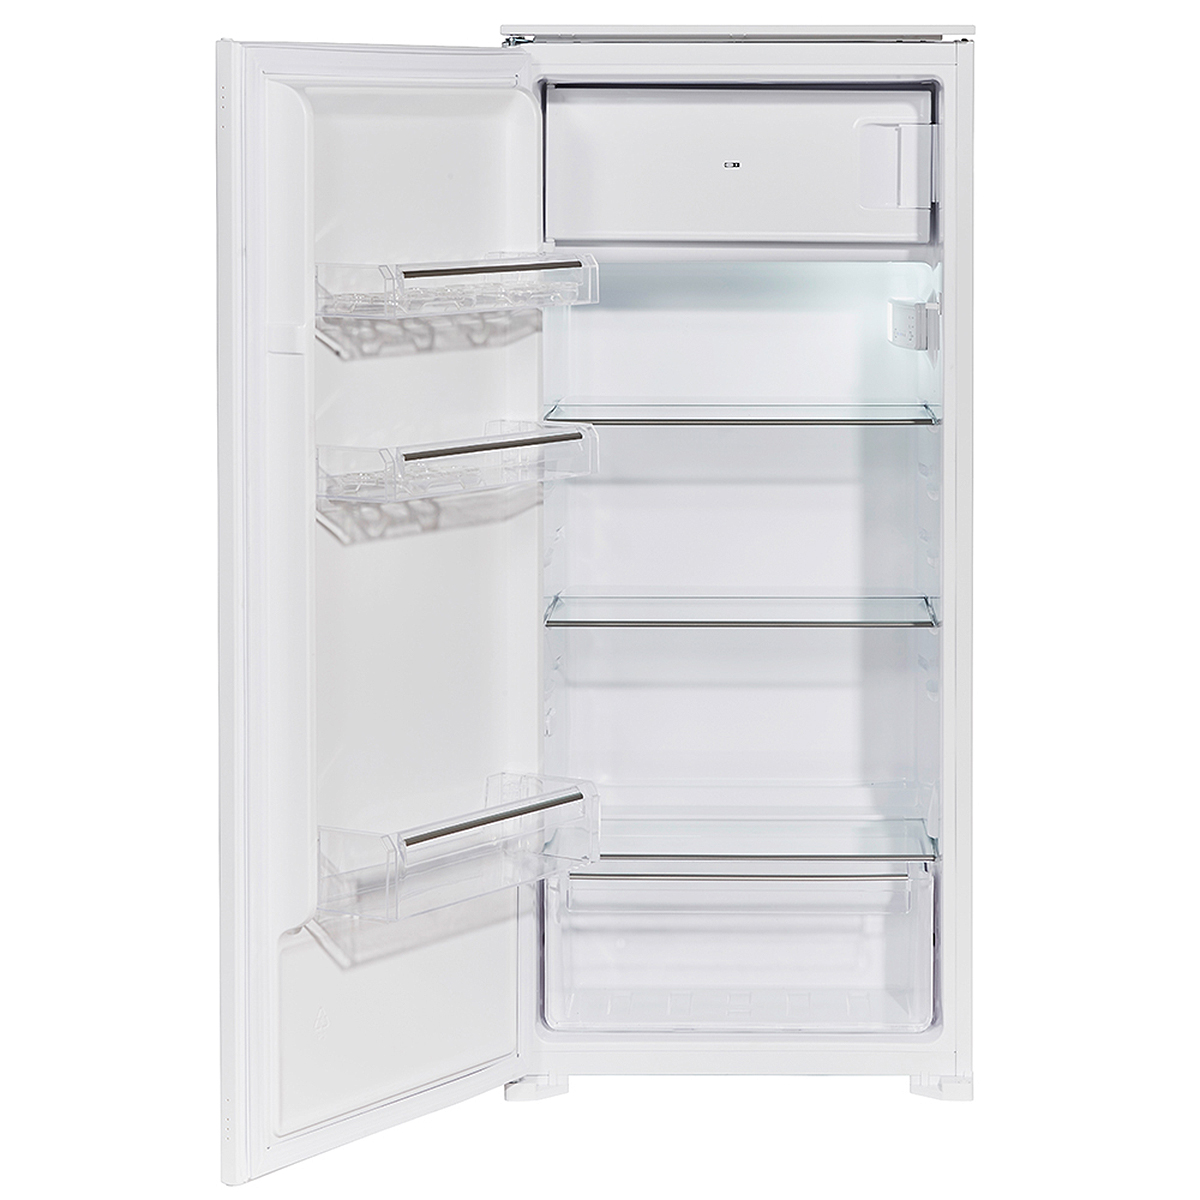 EB 1220 Einbau WOLKENSTEIN mm hoch, Weiß) Kühlschrank WKS190.4 (F,